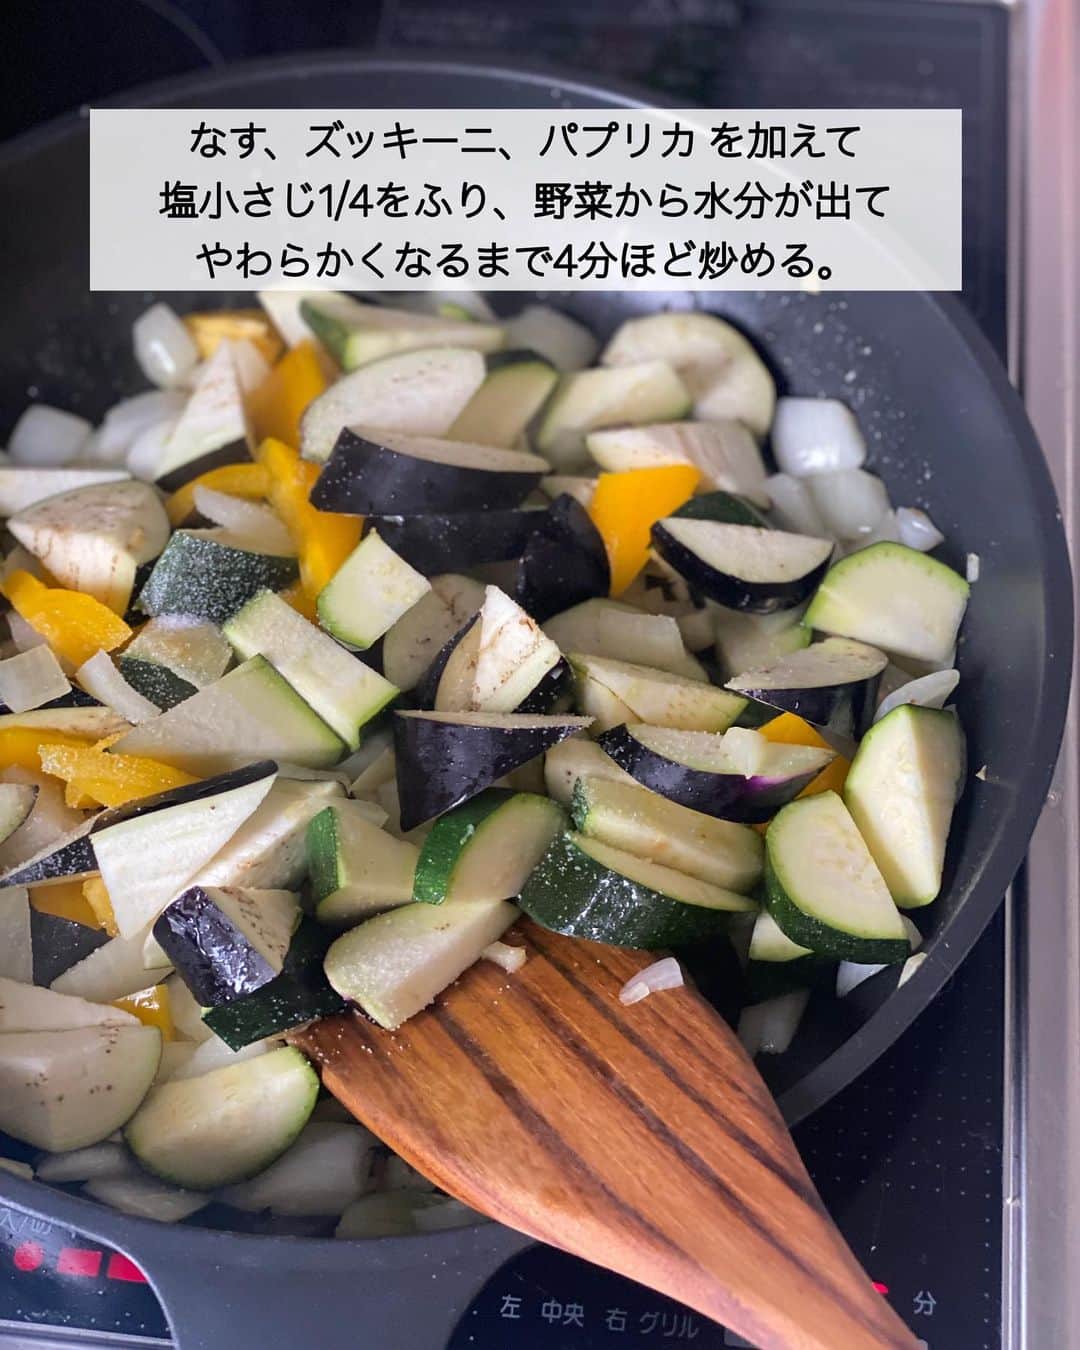 ちおりさんのインスタグラム写真 - (ちおりInstagram)「【旨みがギュッと詰まった】 ⁡ 他のレシピを見る→ @chiori.m.m をチェック✅ ⁡ ⁡ ━︎━︎━︎━︎━︎━︎━︎━︎━︎━︎━︎━︎━︎━︎ 夏野菜たっぷりラタトゥイユ🍅 ━︎━︎━︎━︎━︎━︎━︎━︎━︎━︎━︎━︎━︎━︎ ⁡ ⁡ こんにちは(^ ^) 今日は簡単野菜煮込みです🍆 ⁡ ラタトゥイユは水分が多いと味がボヤけるので 極力少なめにして、煮詰めていくと 旨みがギュッと詰まったコク深な味わいになります。夏は冷やしても◎ ⁡ そのまま食べても、パンに合わせても リメイクするなら そうめんにのせてオリーブオイルをたらしたり ドリアにしたり 色々な料理に使えるので 作り置きしておくと便利です。 ⁡ 白身魚をソテーやムニエルにして一緒に食べるととっても美味しいのでおすすめ☺️←写真あります。 ⁡ ワインのお供🍷にもぜひ^ ^ ⁡ ⁡ ⁡ ________________________________________ ⁡ ⁡ ✍︎ ✍︎recipe ✍︎ ✍︎ ⁡ ⁡ 👩‍🌾【材料】3〜4人分 •なす……………………2本（180g） •ズッキーニ………….1本（150g） •玉ねぎ…………………1個 •パプリカ（黄）……1/2個 •にんにく………………2かけ •オリーブオイル……大さじ2 •塩…………………………小さじ1/4 •カットトマト缶………1缶（400g） A白ワイン（または酒）…大さじ3 Aみりん………………………大さじ1 Aコンソメ顆粒……………大さじ1/2 A砂糖…………………………小さじ1 Aあれば乾燥バジル………小さじ1/2 ⁡ ⁡ ⁡ ________________________________________ ⁡ ⁡ ⁡ 👩‍🍳【作り方】 ❶なすはひと口大に切り、水に3分ほどさらして水気を切る。ズッキーニ、玉ねぎ、パプリカ はひと口に、にんにくはみじん切りにする。 ⁡ ❷フライパンにオリーブオイルを弱火で熱し、にんにくを炒める。香りがたってきたら玉ねぎを加え、やわらかくなるまで弱めの中火で3分ほど炒める。 ⁡ ❸なす、ズッキーニ、パプリカ を加えて塩小さじ1/4をふり、野菜から水分が出てやわらかくなるまで4分ほど炒める。 ⁡ ❹トマト缶と【A】を加えて混ぜ合わせたら蓋をし、弱火で15分〜20分煮る。（焦げ付かないように時々混ぜながら煮詰めます）必要であれば塩少々で味を調えてください。 ⁡ ⁡ ________________________________________ ⁡ ⁡ ⁡ 📝【POINT】 •パプリカはピーマン2個で代用OKです。 ⁡ •バジルをタイム（乾燥）またはオレガノ（乾燥）小さじ1/4で代用しても美味しいです。 ⁡ •工程4で煮詰めていく時は、水分がとんで焦げ付きやすくなるので何度か混ぜ合わせてください。 ⁡ •日持ちは冷蔵で3〜4日。 冷凍する場合は約3週間です。 ⁡ ⁡ ⁡ ≡︎≡︎≡︎≡︎≡︎≡︎≡︎≡︎≡︎≡︎≡︎≡︎≡︎≡︎≡︎≡︎≡︎≡︎≡︎≡︎≡︎≡︎≡︎≡︎≡︎≡︎≡︎≡︎≡︎≡︎≡︎≡︎≡︎≡︎ 【✅新刊レシピ本のお知らせ】 📕ちおり流くり返し作りたいおかず 🙇🏻‍♀️おかげ様で書籍累計10万部を突破しました。 ⁡ ⁡ 全国の書店、Amazon、楽天ブックス 宝島チャンネルにて発売中です。 ⁡ ➤ ➤ ➤ @chiori.m.m のストーリーハイライト。 プロフィールのリンクからご覧いただけます😊 📗ちおりの簡単絶品おかず１、２ 既刊もぜひご覧いただきたいです。 ⁡ ≡︎≡︎≡︎≡︎≡︎≡︎≡︎≡︎≡︎≡︎≡︎≡︎≡︎≡︎≡︎≡︎≡︎≡︎≡︎≡︎≡︎≡︎≡︎≡︎≡︎≡︎≡︎≡︎≡︎≡︎≡︎≡︎≡︎≡︎ ⁡ ⁡ 最後までご覧いただきありがとうございます😊 ⁑ ⁑ ⁑ ⁑ ⁑ ⁑ ⁑  #なす #なすレシピ #ラタトゥイユ   #Nadiaレシピ #Nadiaartist   #料理 #食卓 #献立 #簡単ごはん  #簡単レシピ #節約レシピ #時短レシピ  #日々の暮らし #作り置きレシピ  #ズッキーニレシピ #トマト缶レシピ   #夕飯レシピ #お弁当レシピ #定番レシピ  #料理初心者  #おつまみレシピ #副菜レシピ  #作り置き #料理レシピ #茄子レシピ  #トマト缶 #ラタトゥイユリメイク  #ラタトゥイユレシピ」7月13日 13時02分 - chiori.m.m